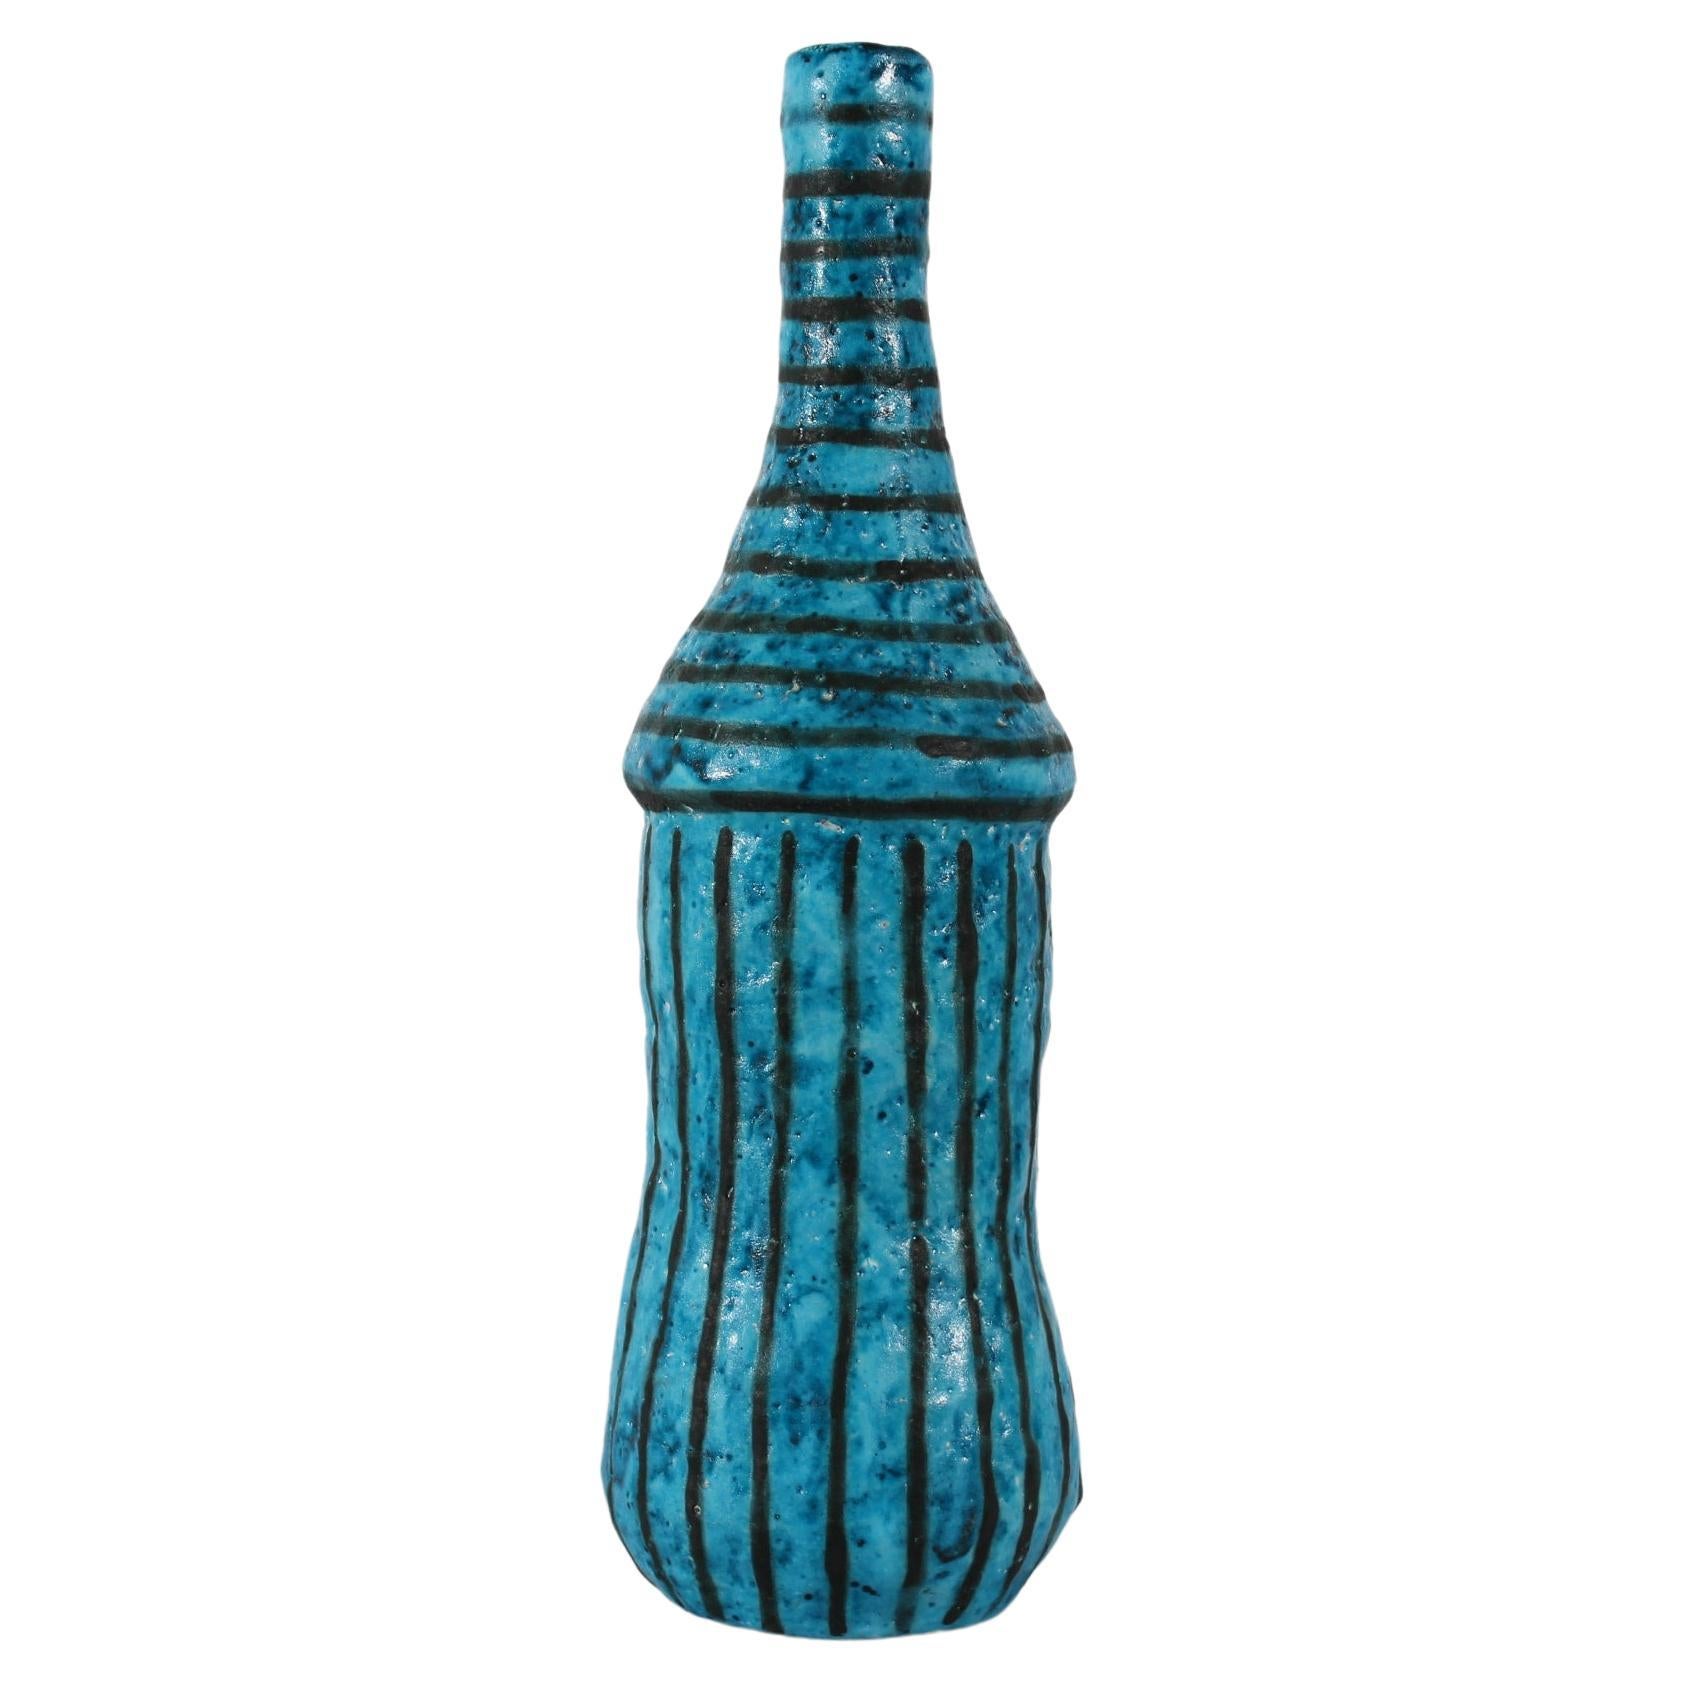 Hohe und schlanke künstlerische Flaschenvase des italienischen Keramikers Guido Gambone (1909-1969), um 1950.
Die leicht asymmetrische Vase ist mit einer matten türkisfarbenen Glasur mit schwarzen Streifen verziert.

Unterzeichnet: Gambone